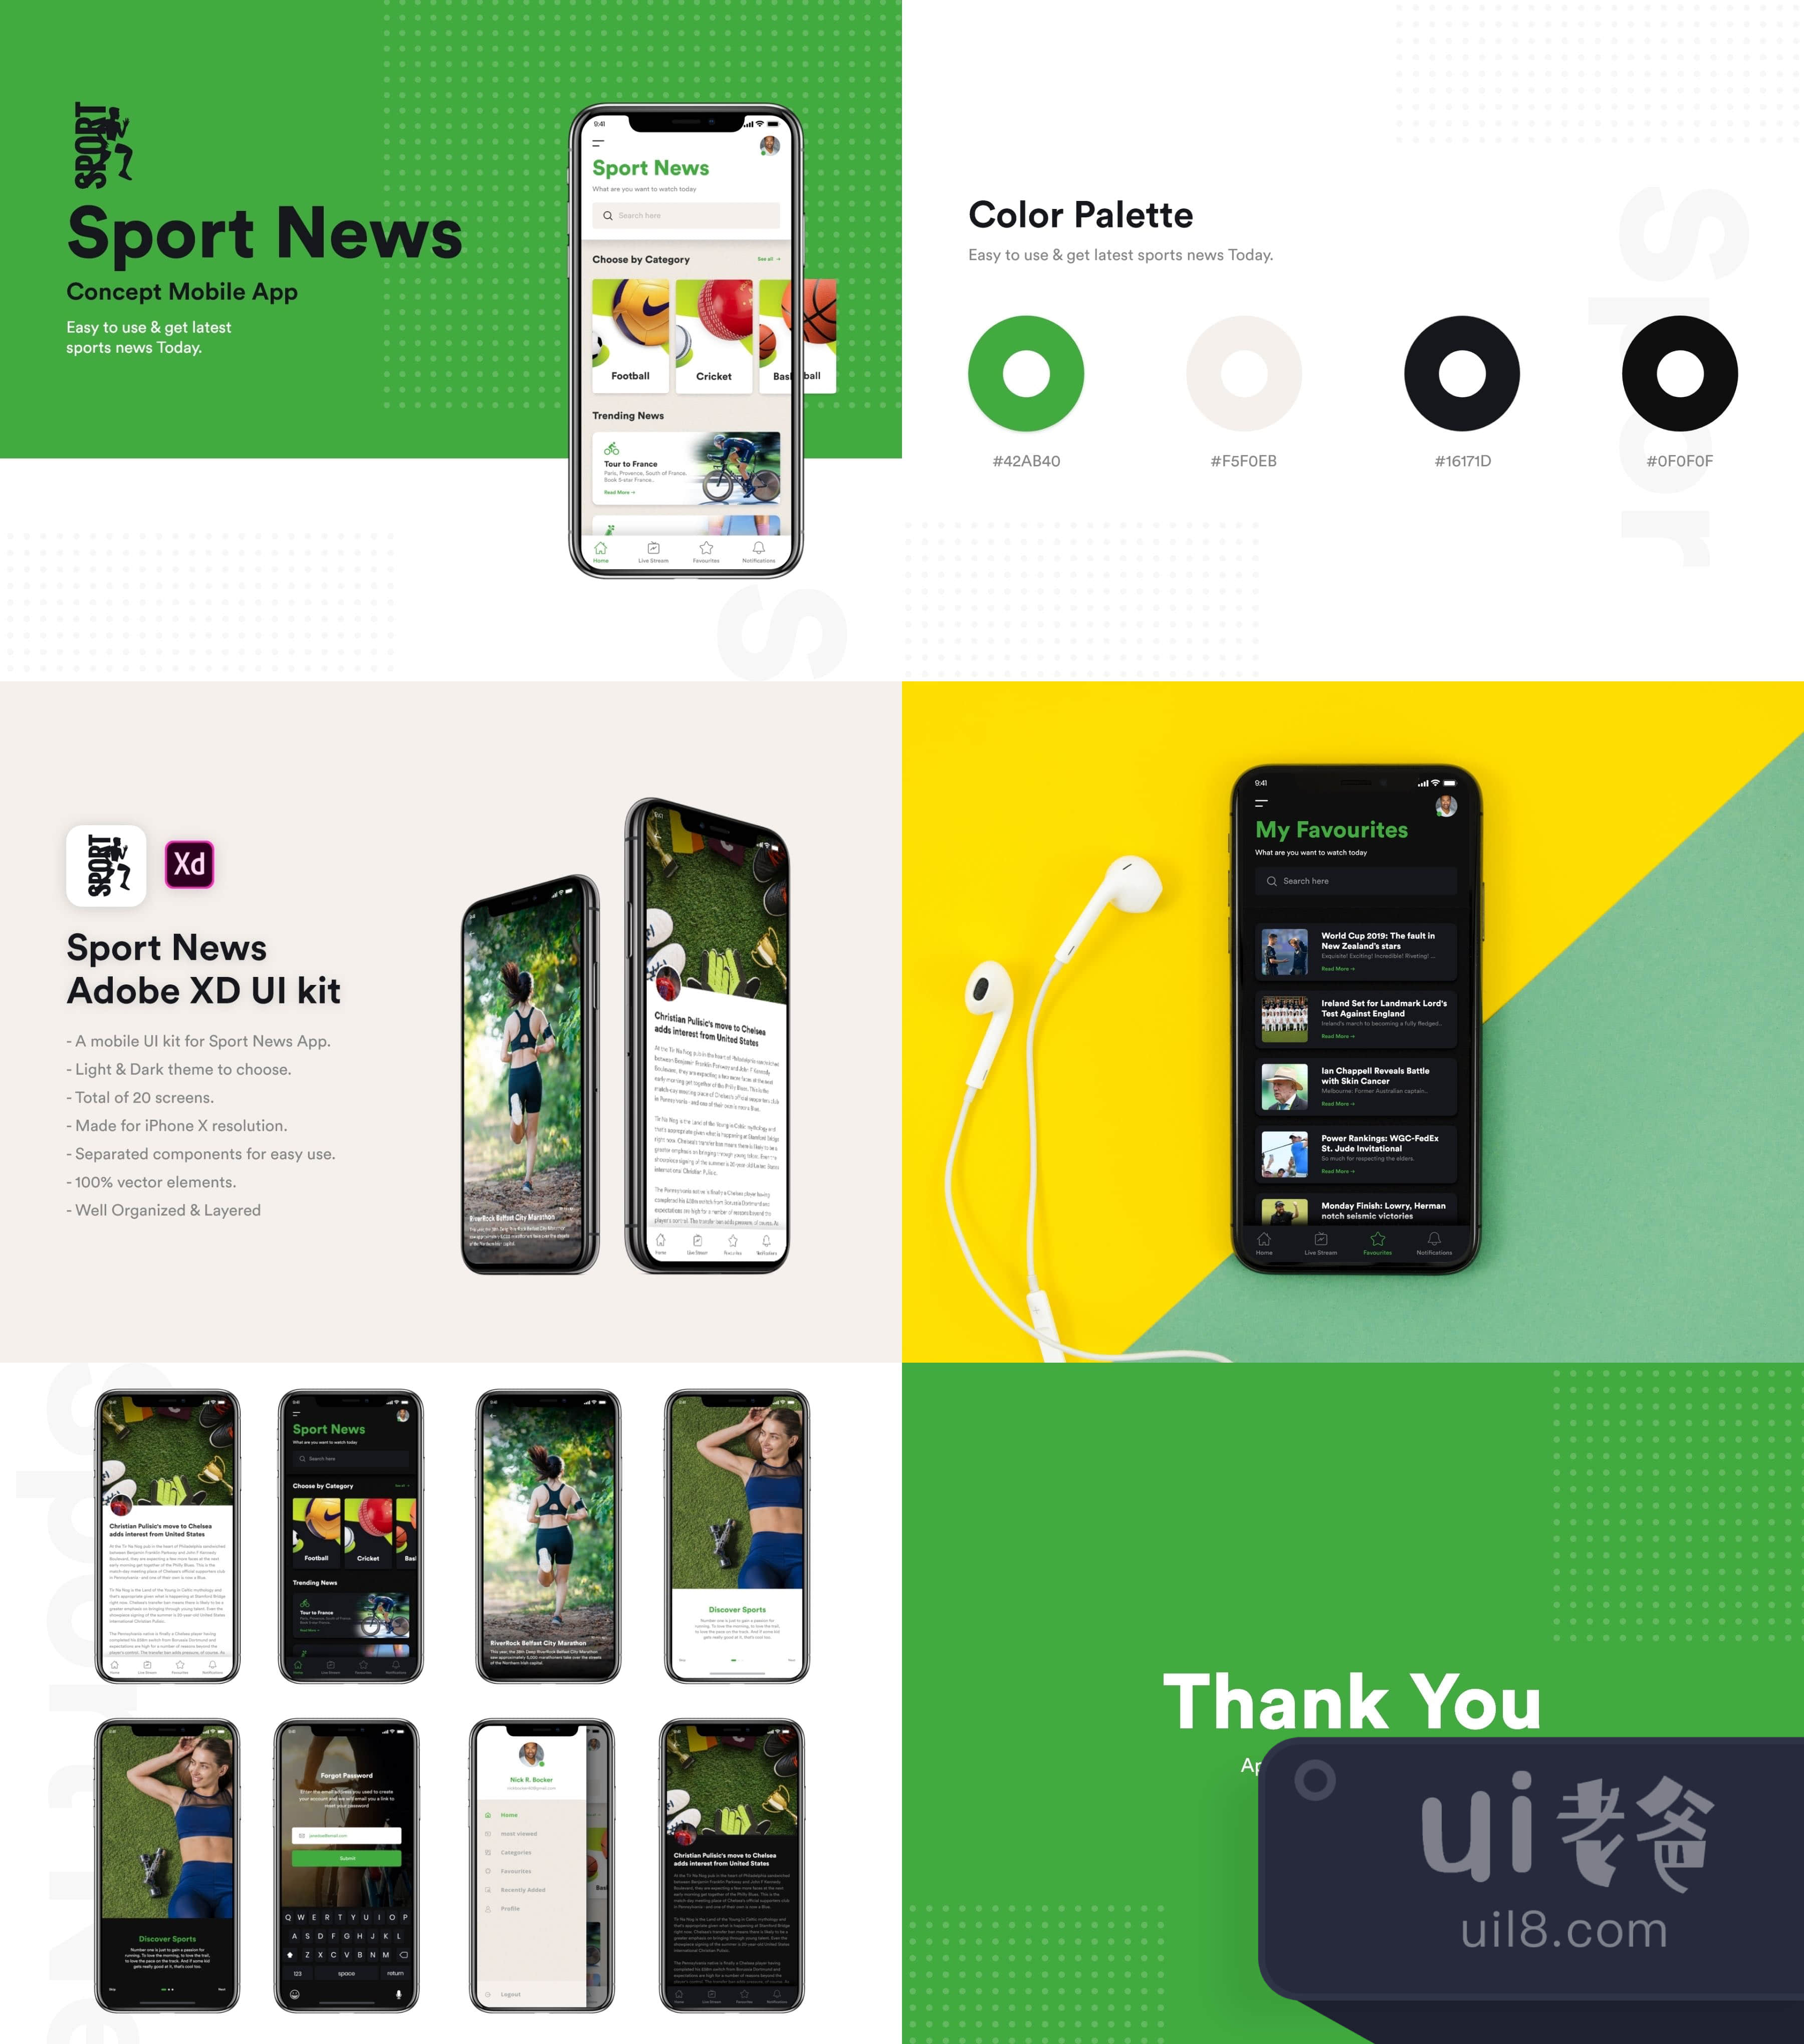 体育新闻概念移动应用 (Sport News Concept Mobile App)插图1